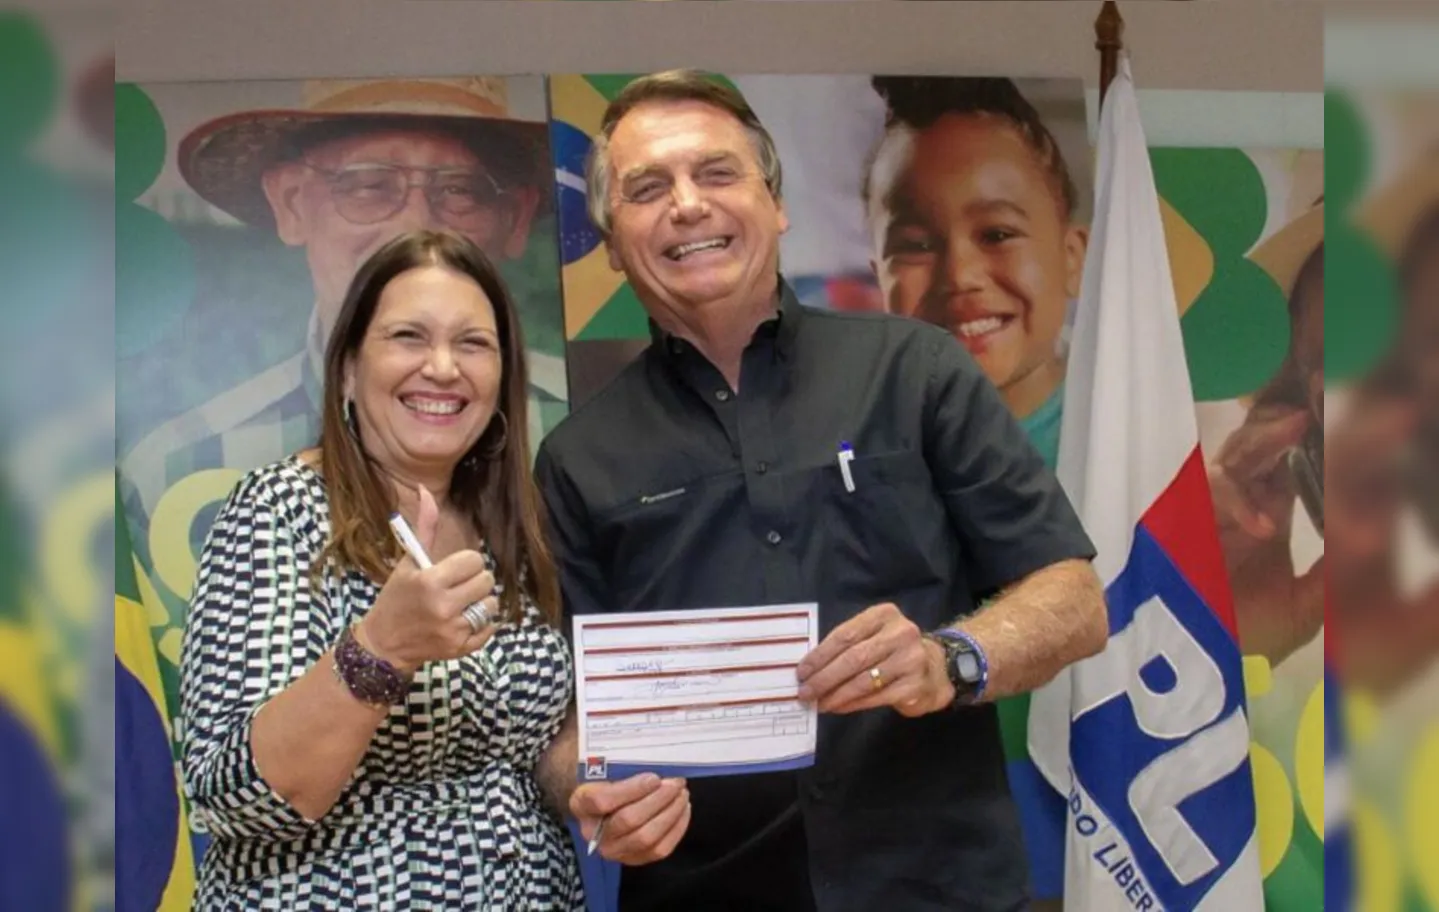 A edeputada Bia Kicis ao lado do presidente Jair Bolsonaro